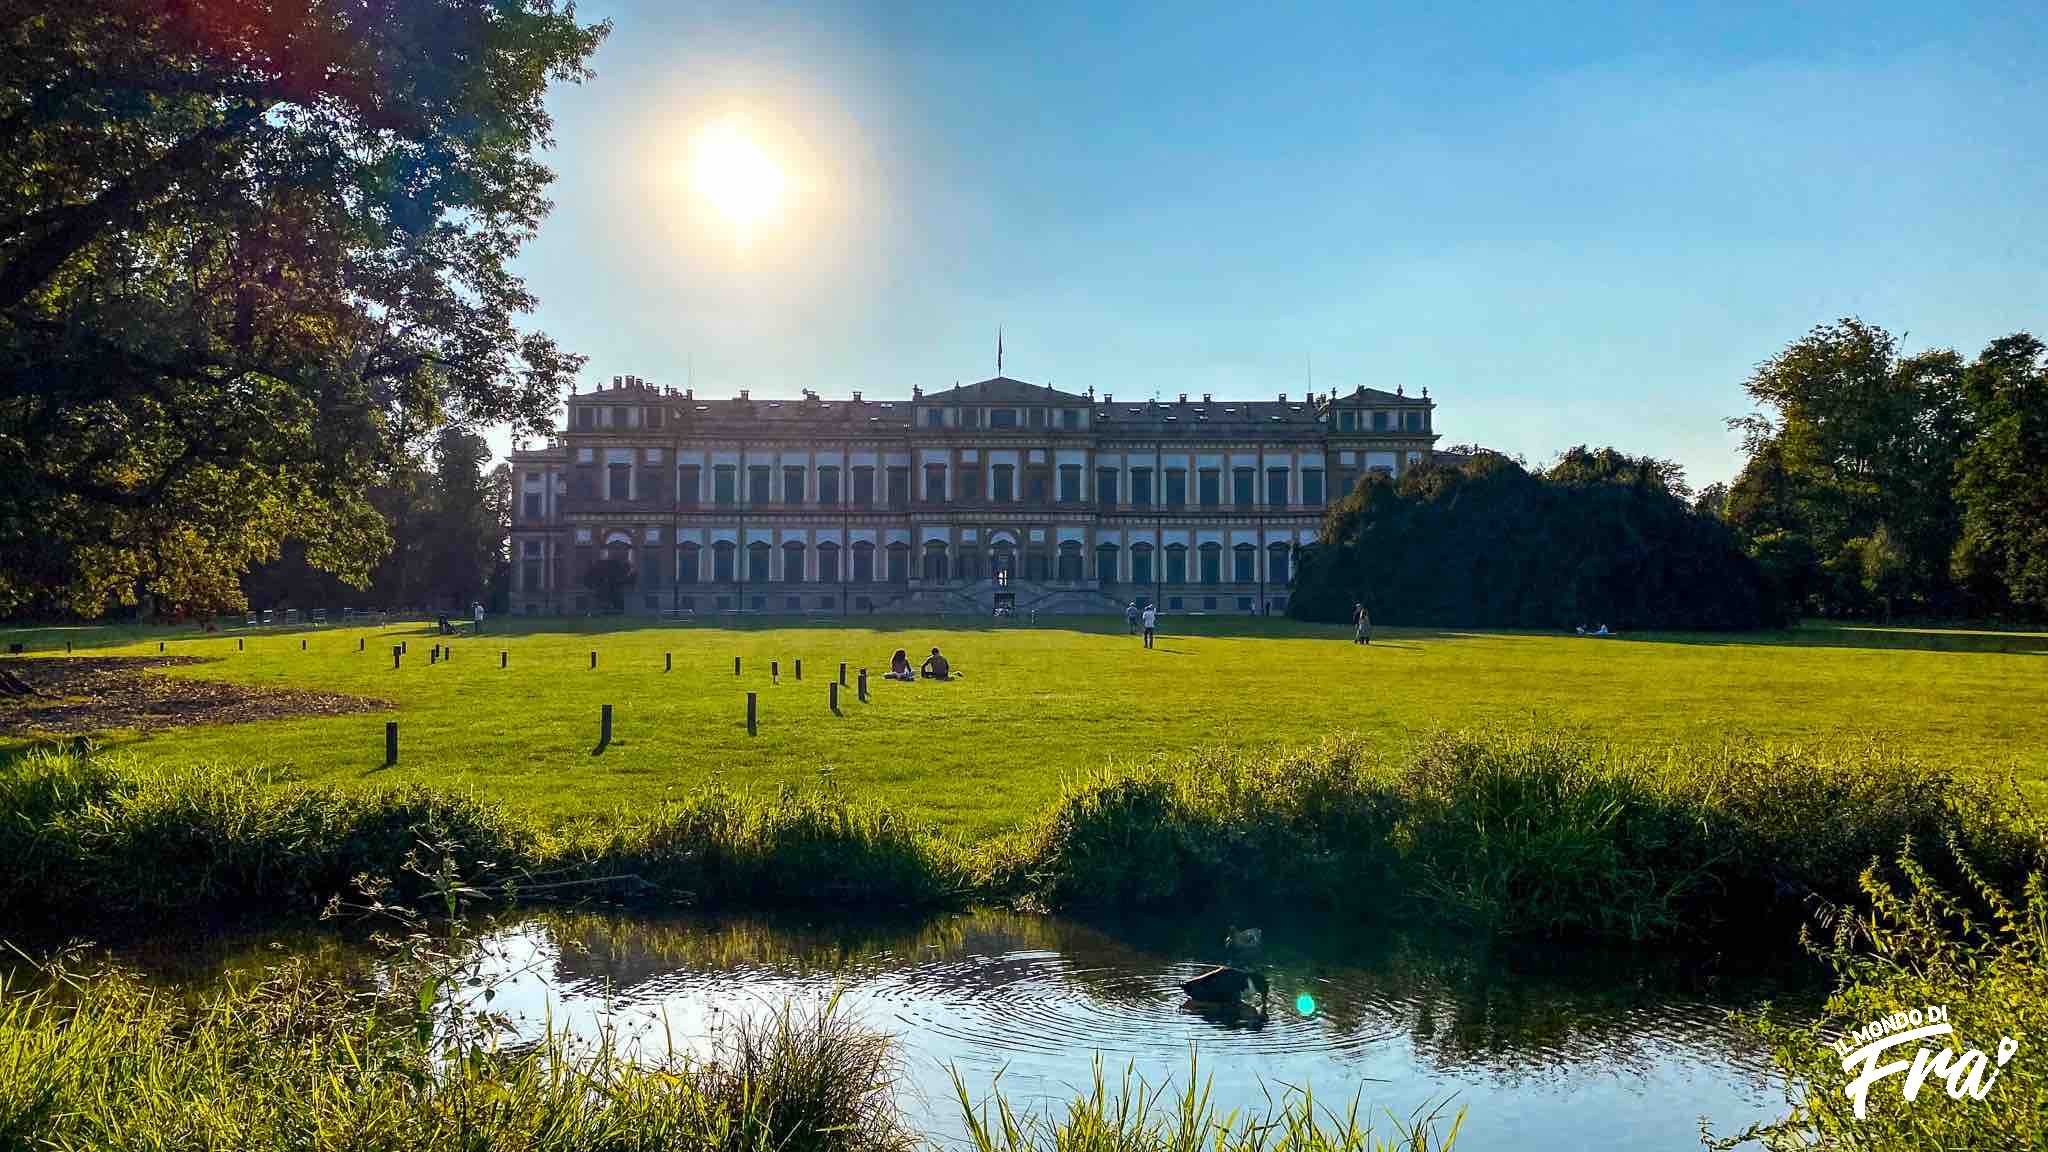 Villa Reale di Monza